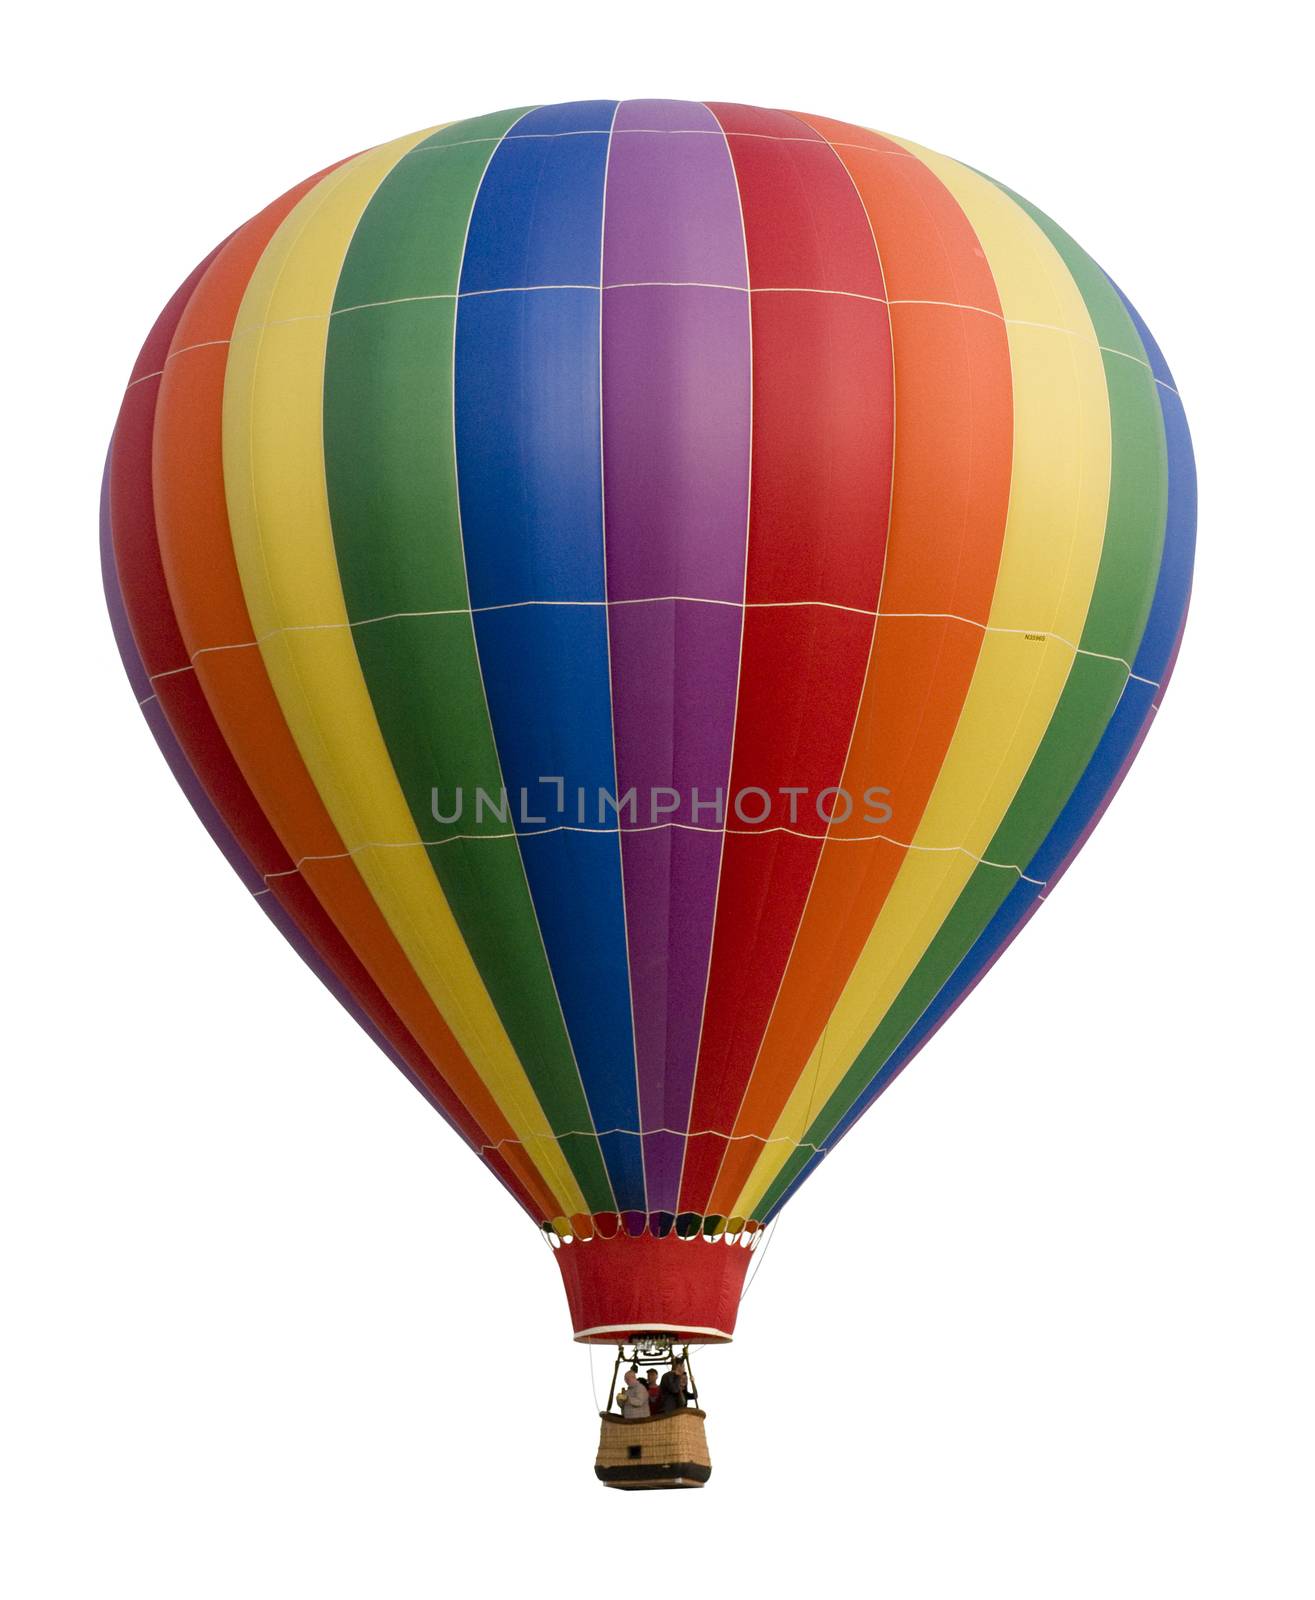 Hot Air Balloon Against White by Balefire9